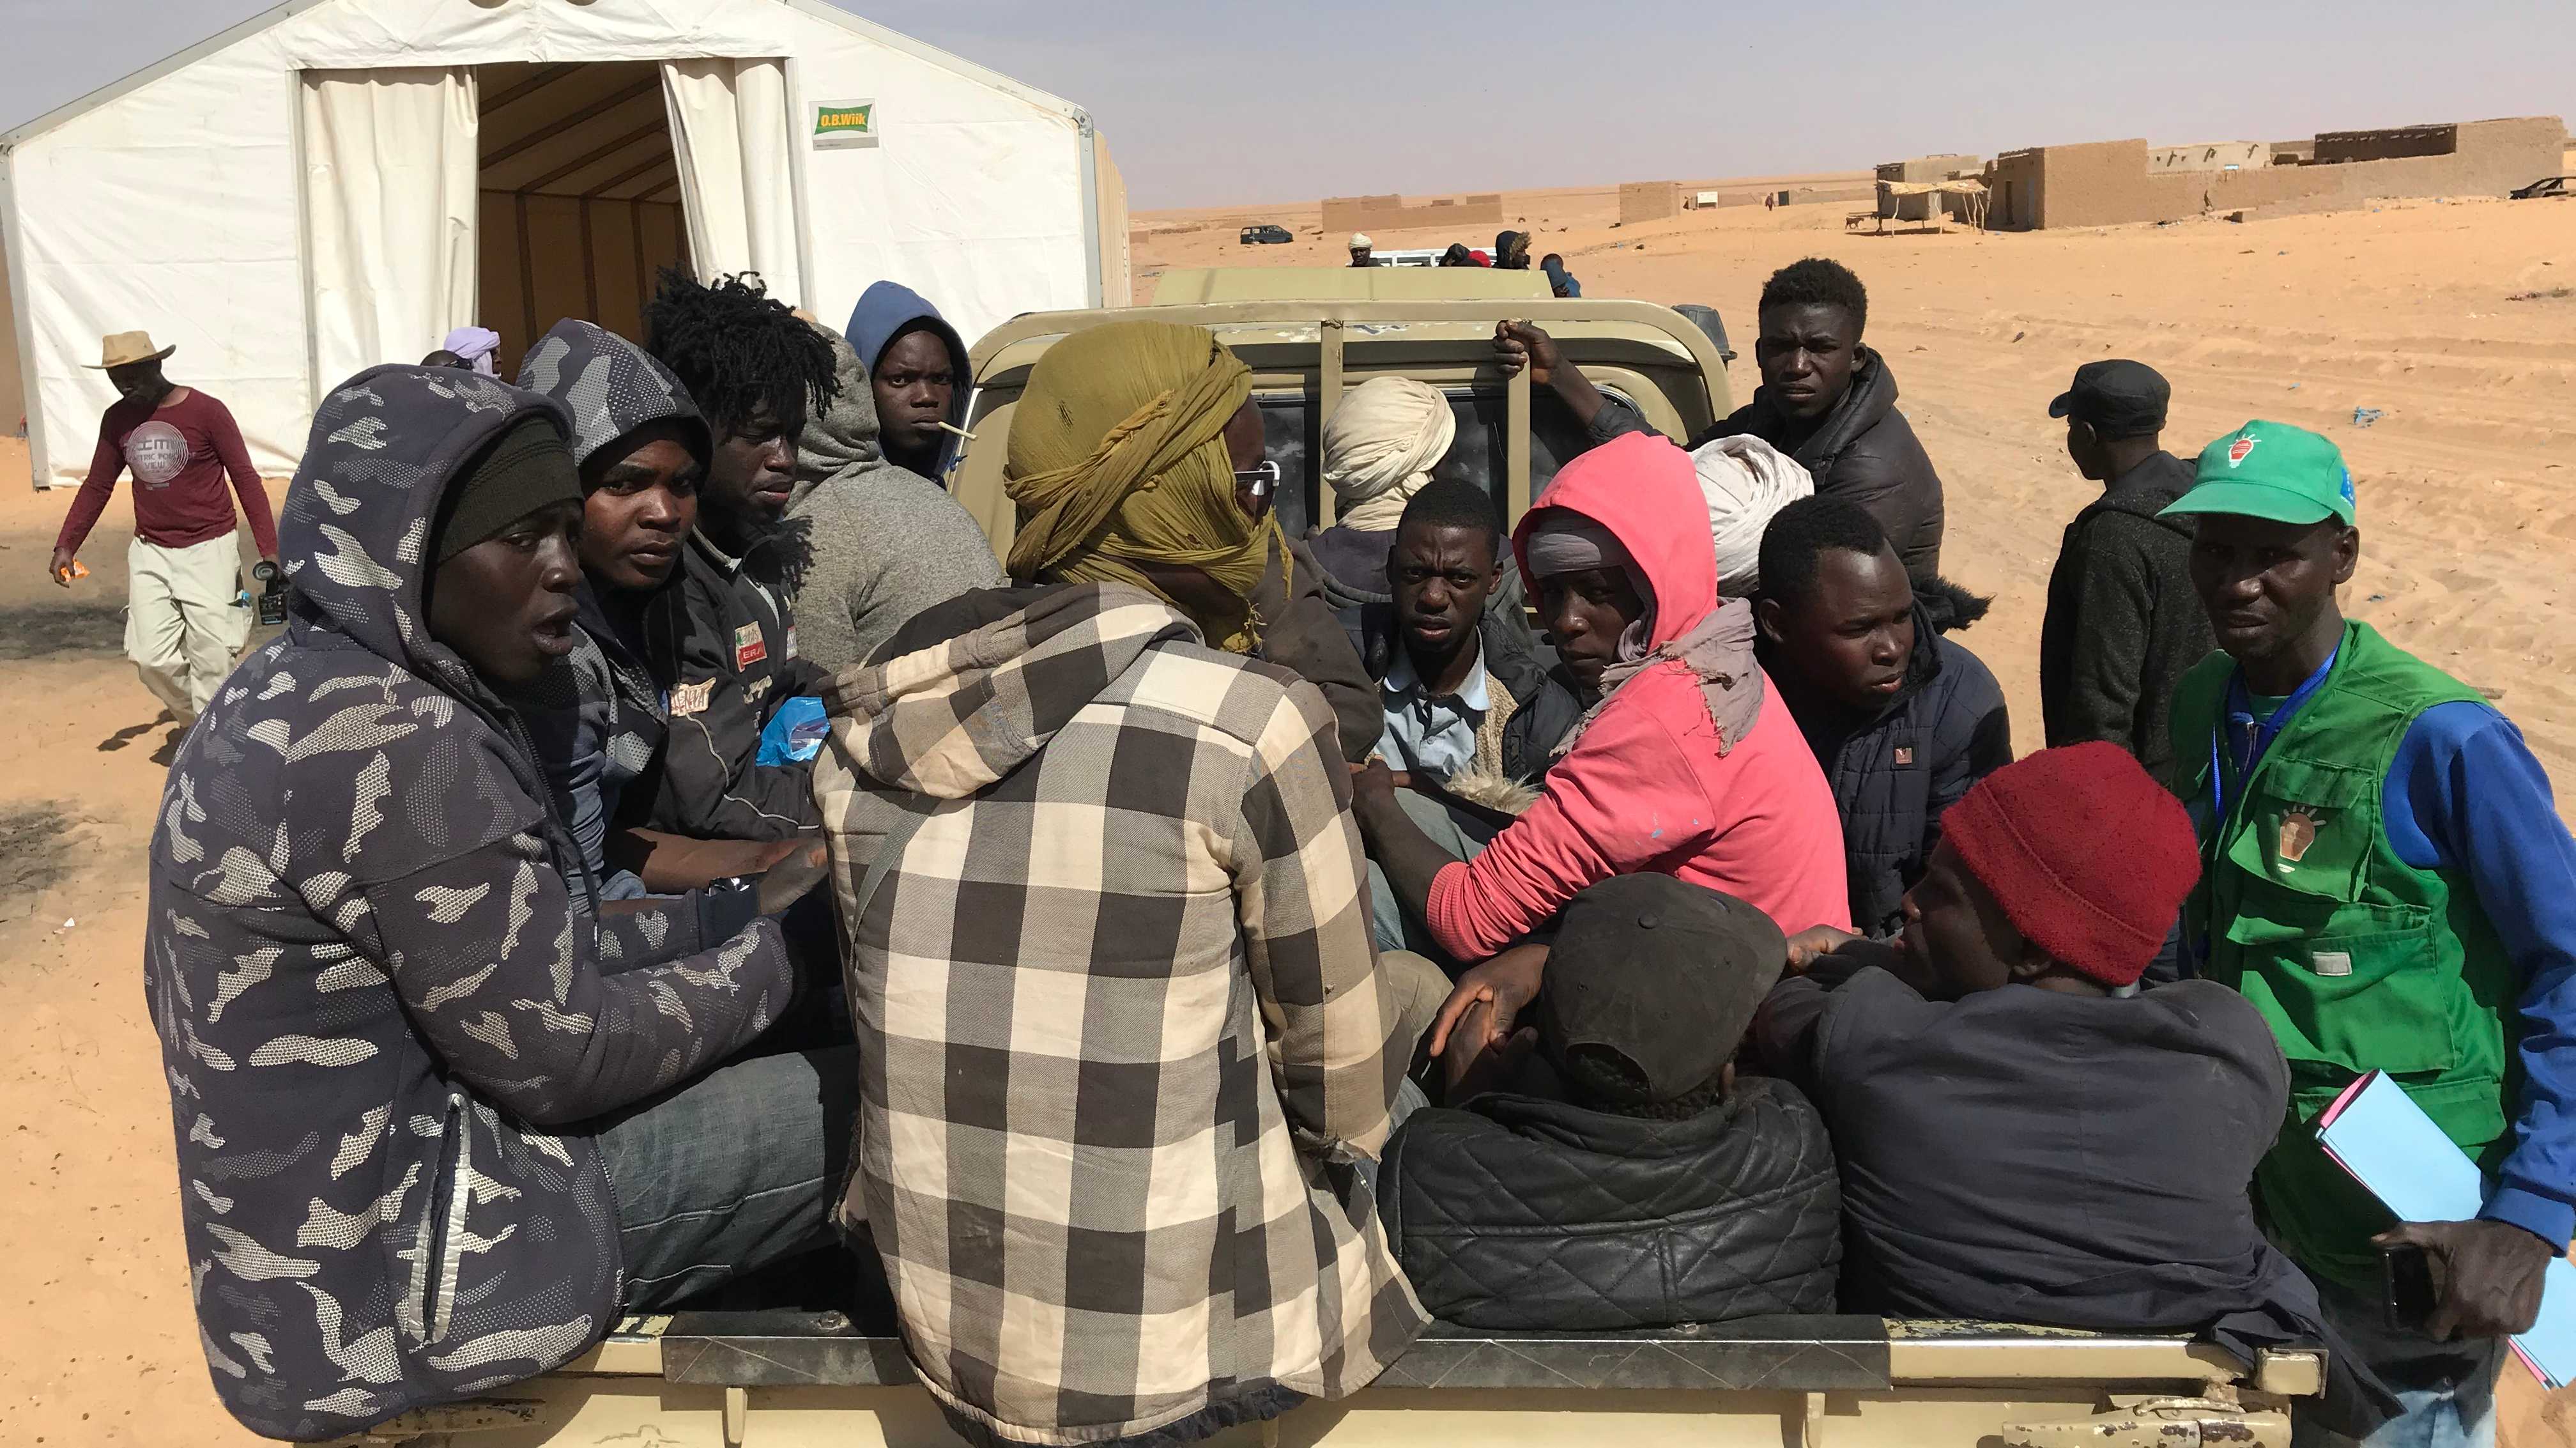 Migranten in Niger, die in Algerien gewaltsam festgenommen, zur nigerianischen Grenze transportiert und ohne Unterstützung in der Sahara zurückgelassen wurden, Februar 2019